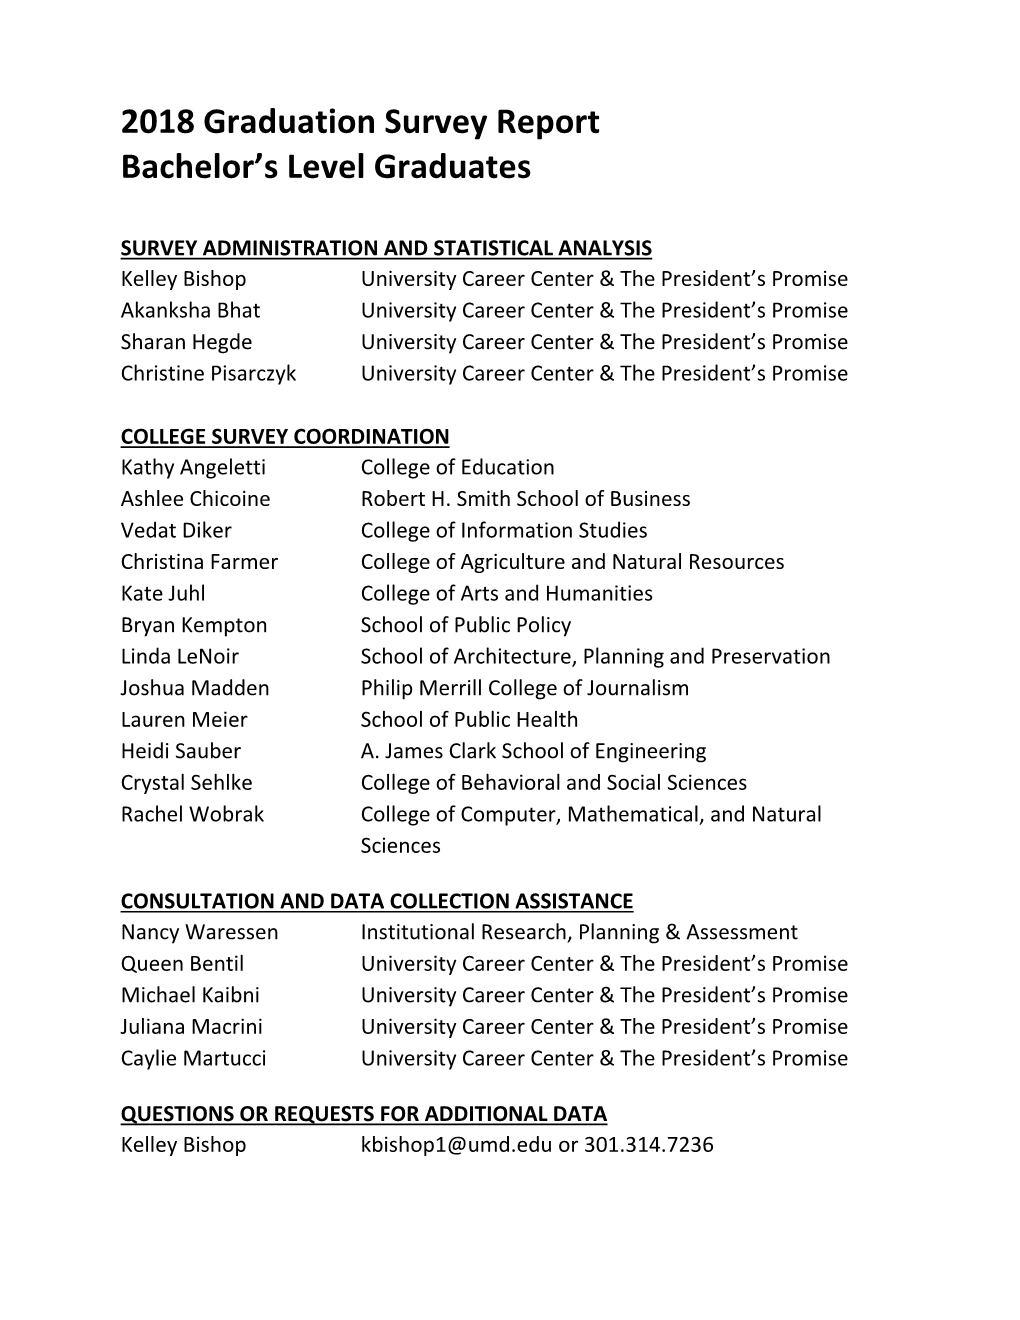 2018 Graduation Survey Report Bachelor's Level Graduates